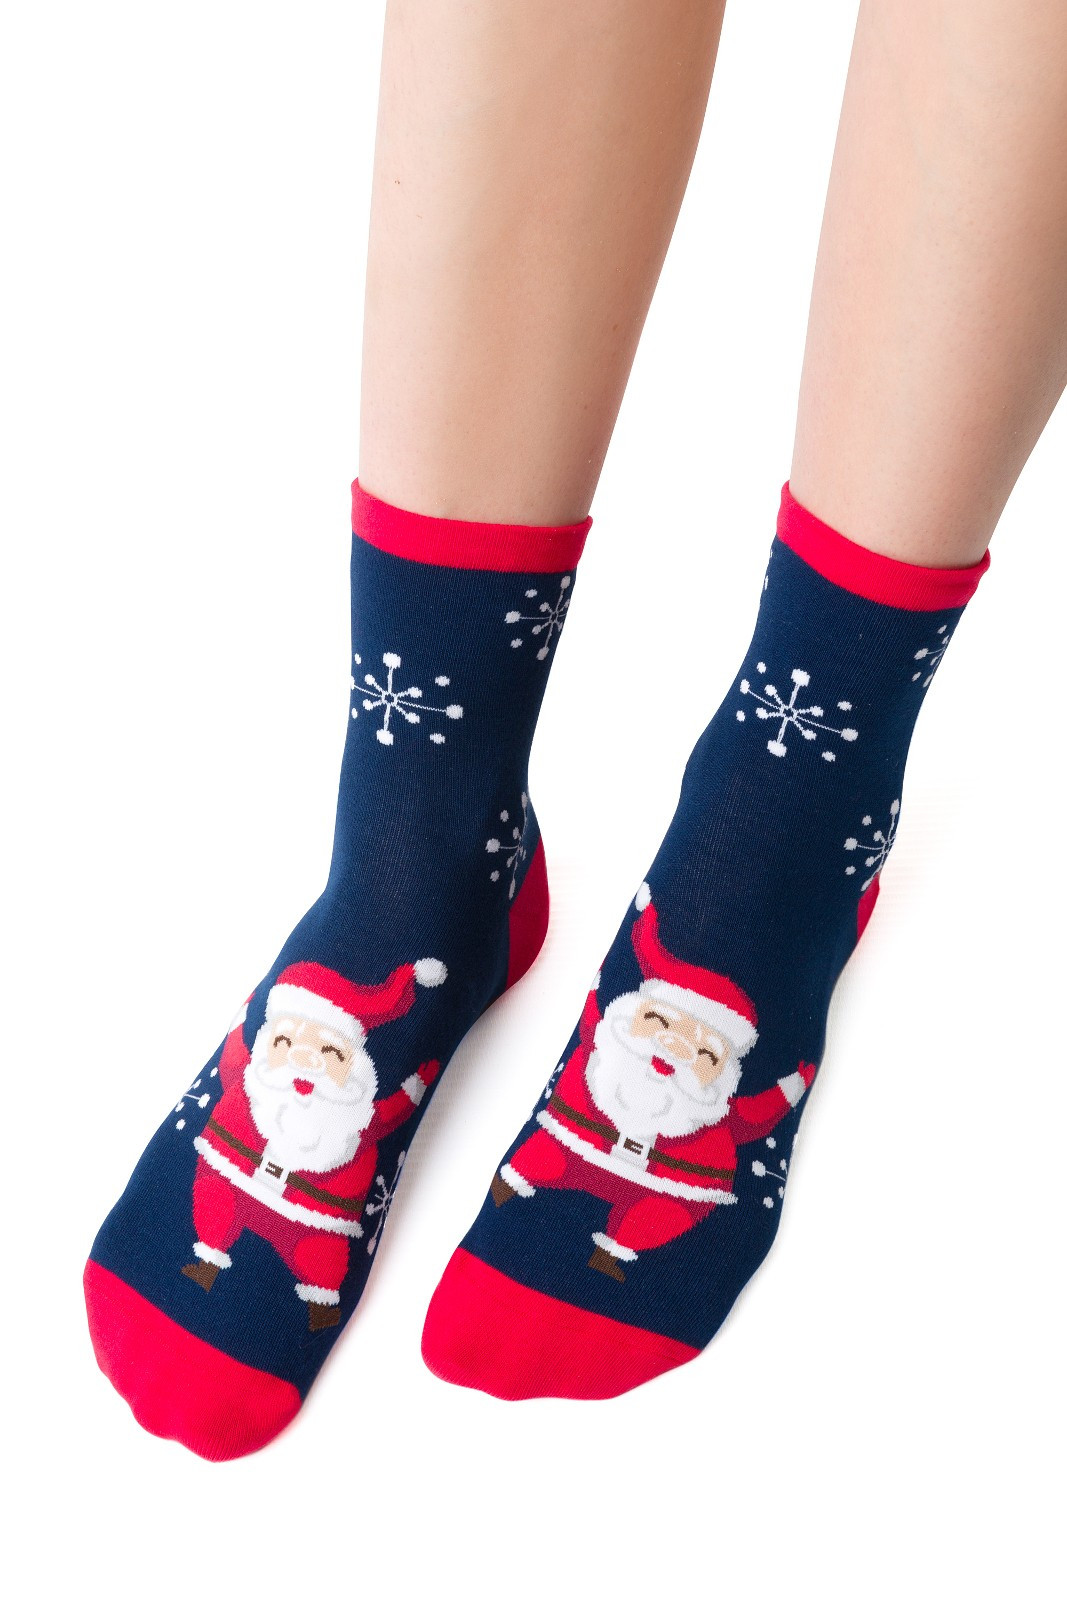 Dámské vánoční ponožky Steven art.136 35-40 tmavě modrá 38-40